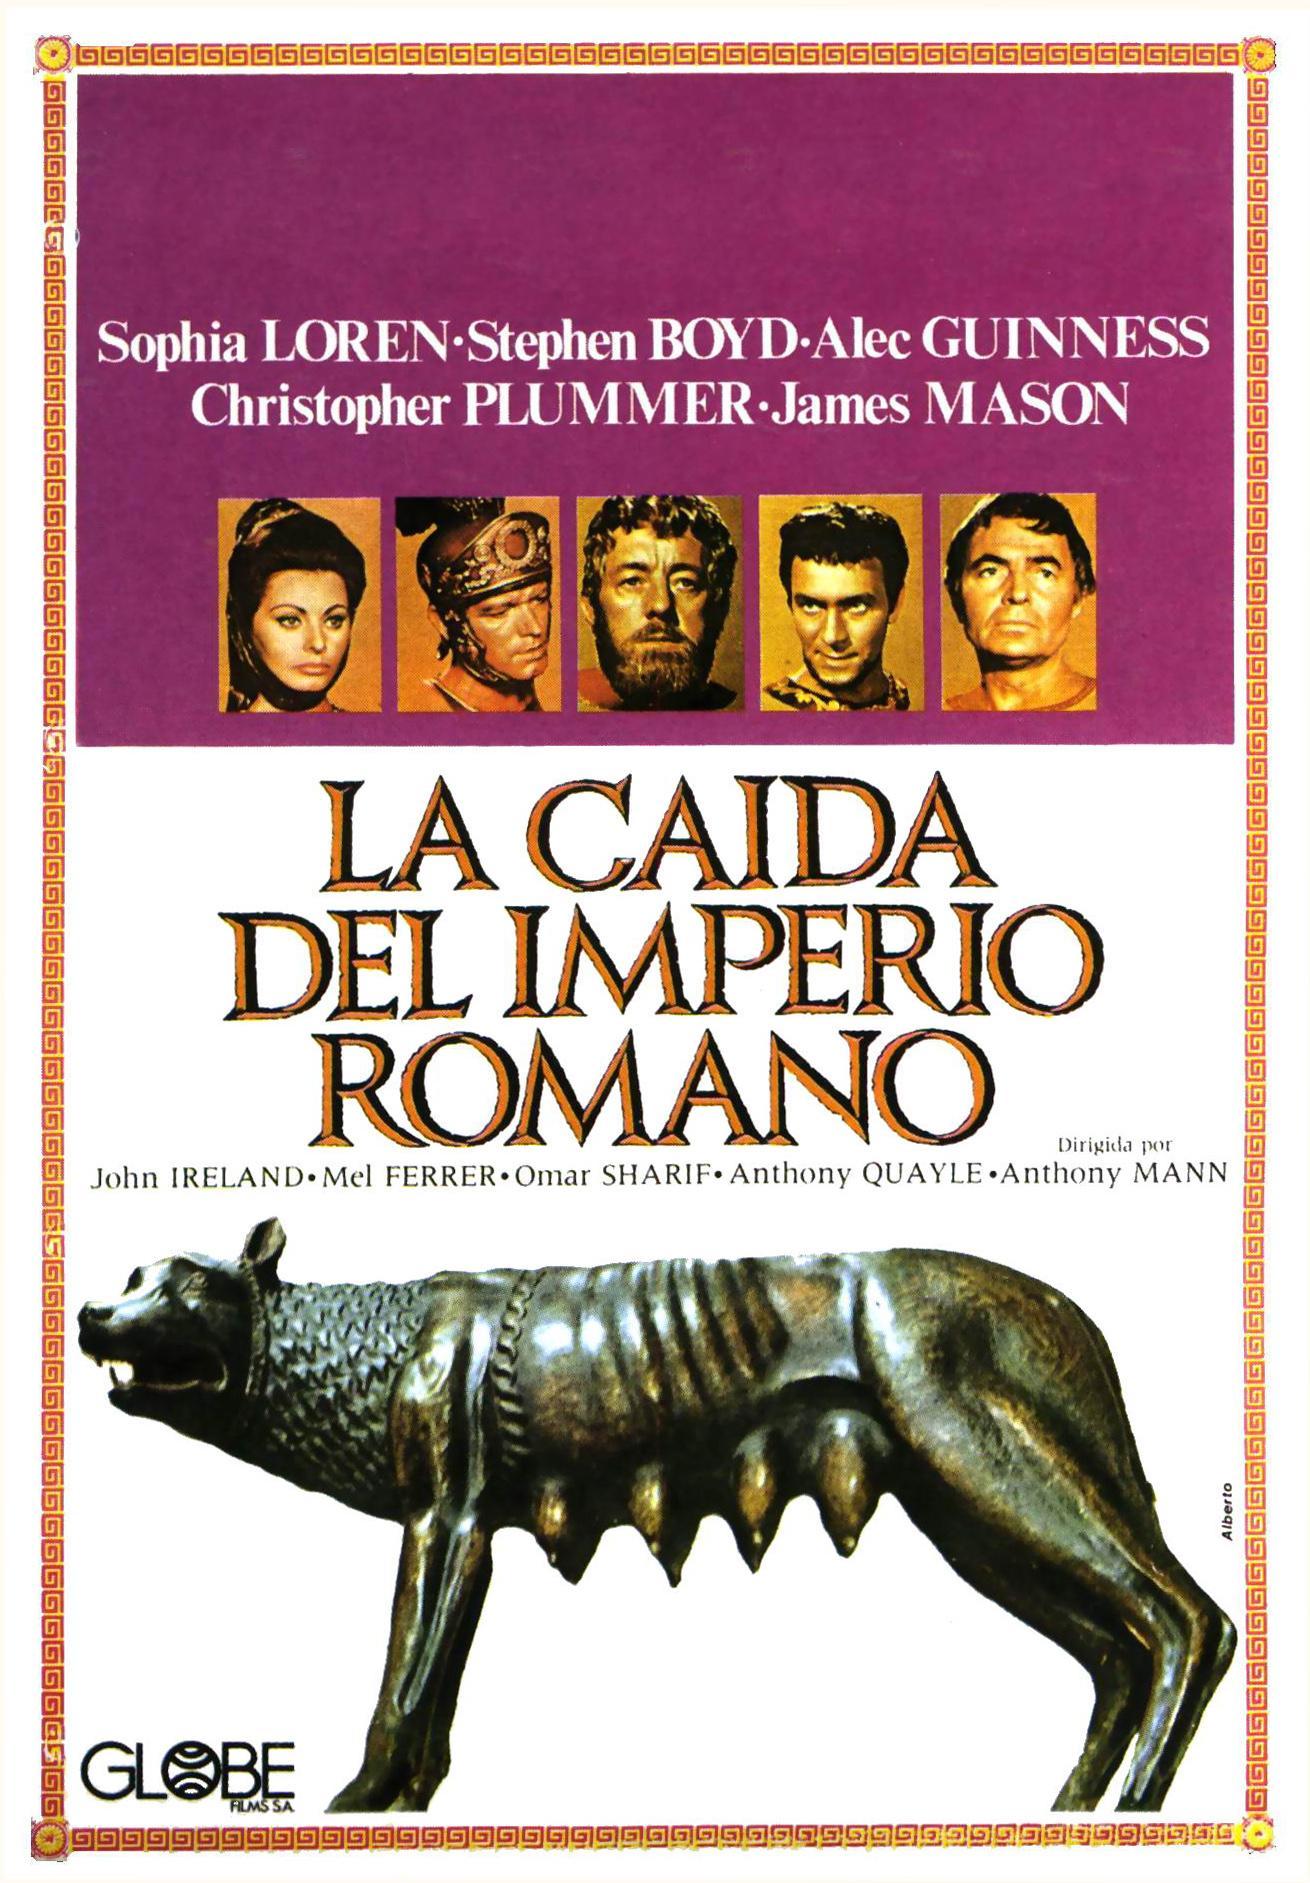 Постер фильма Падение Римской империи | Fall of the Roman Empire